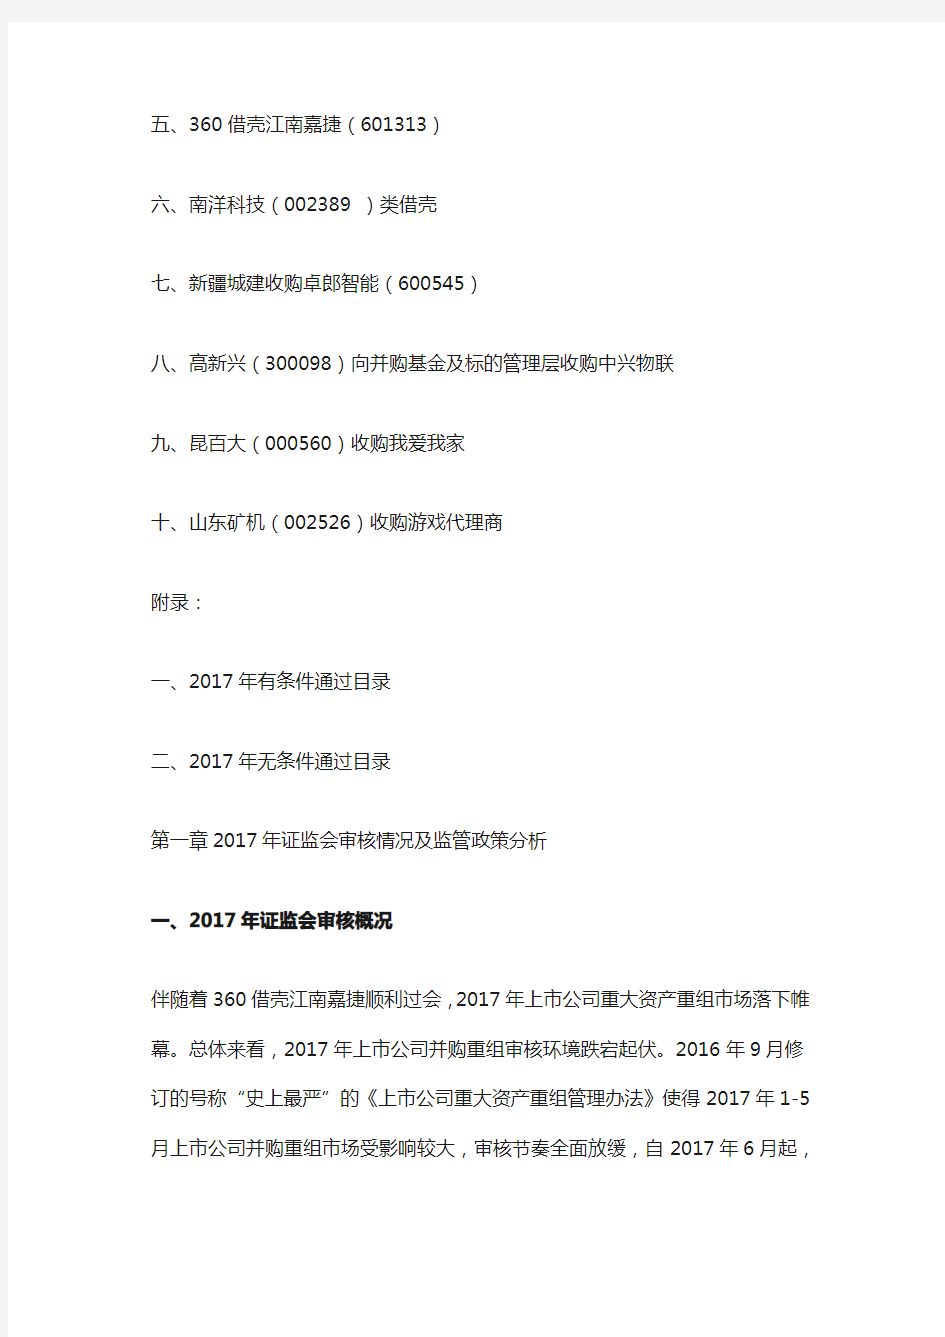 中国上市公司并购重组年度报告